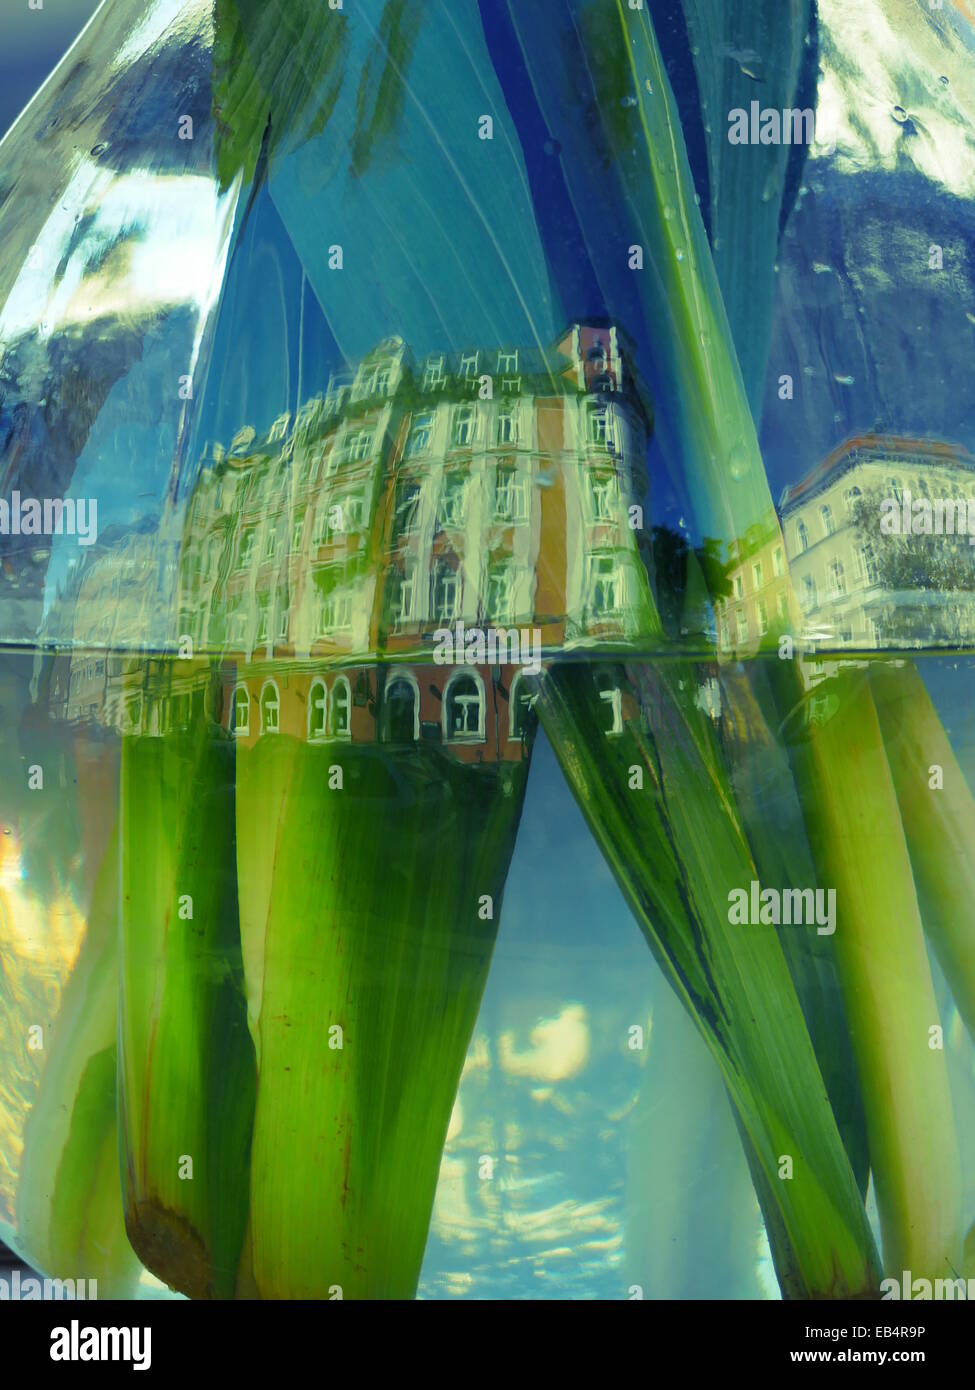 Reflet de bâtiment sur vase en verre Banque D'Images